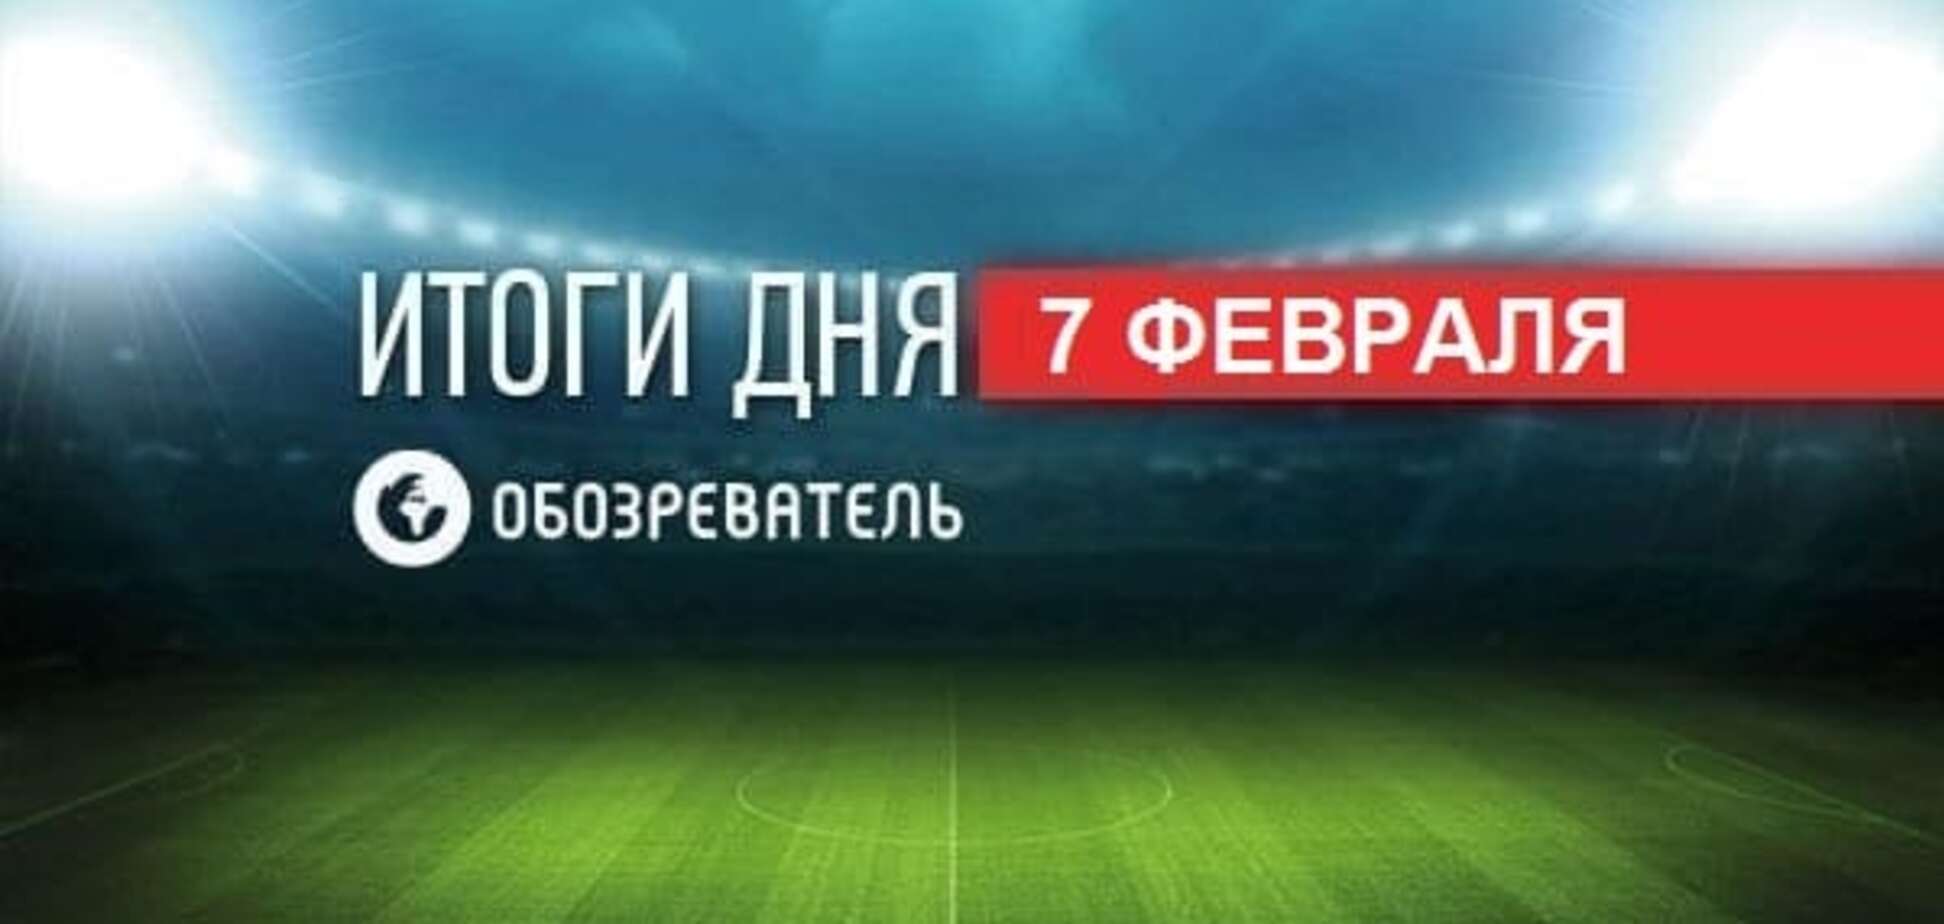 Коломойский принял решение по 'Днепру'. Спортивные итоги 7 февраля